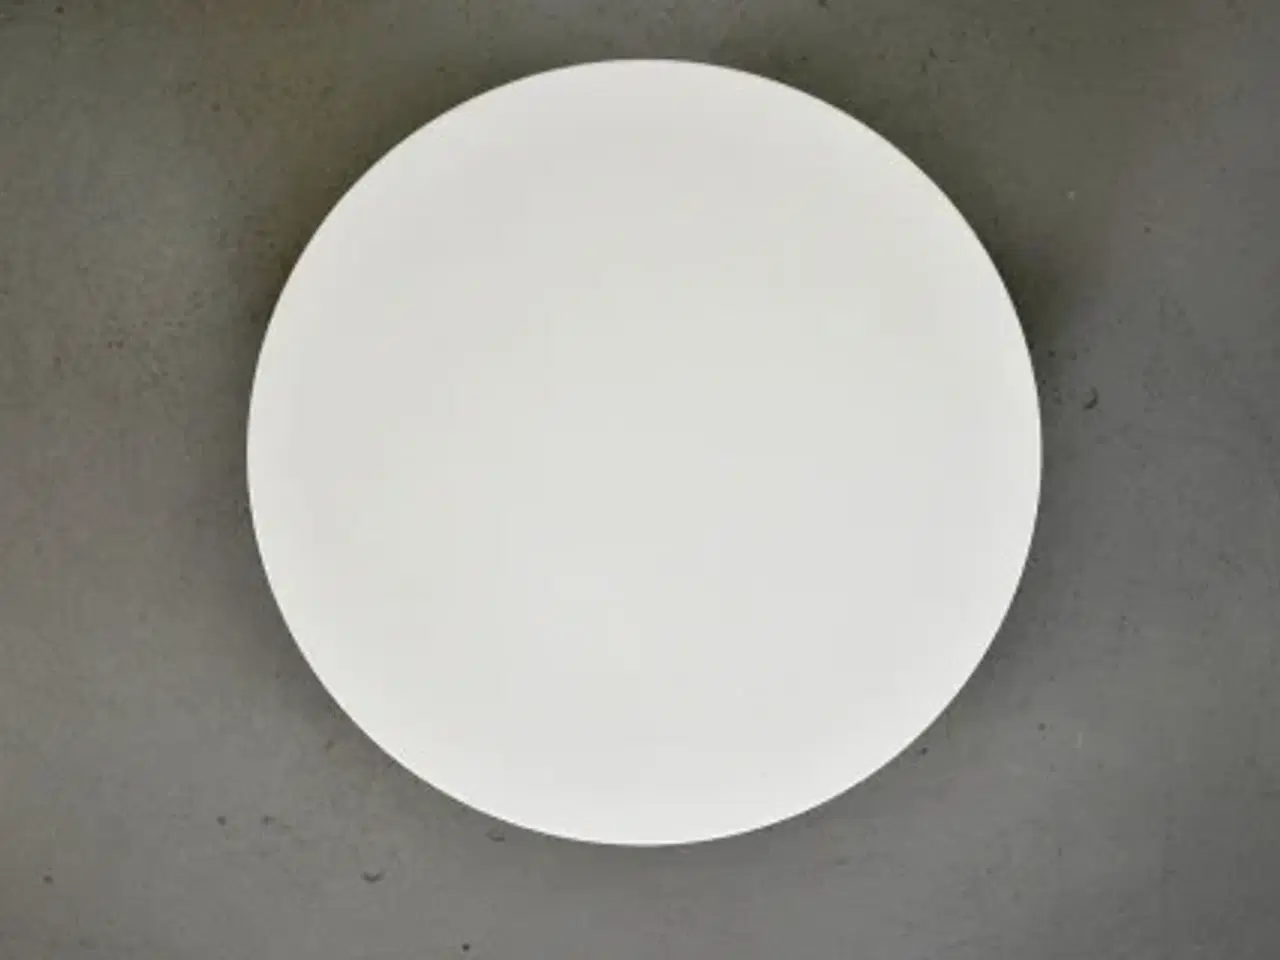 Billede 1 - Steelcase viccarbe shape bord, ø38 cm.